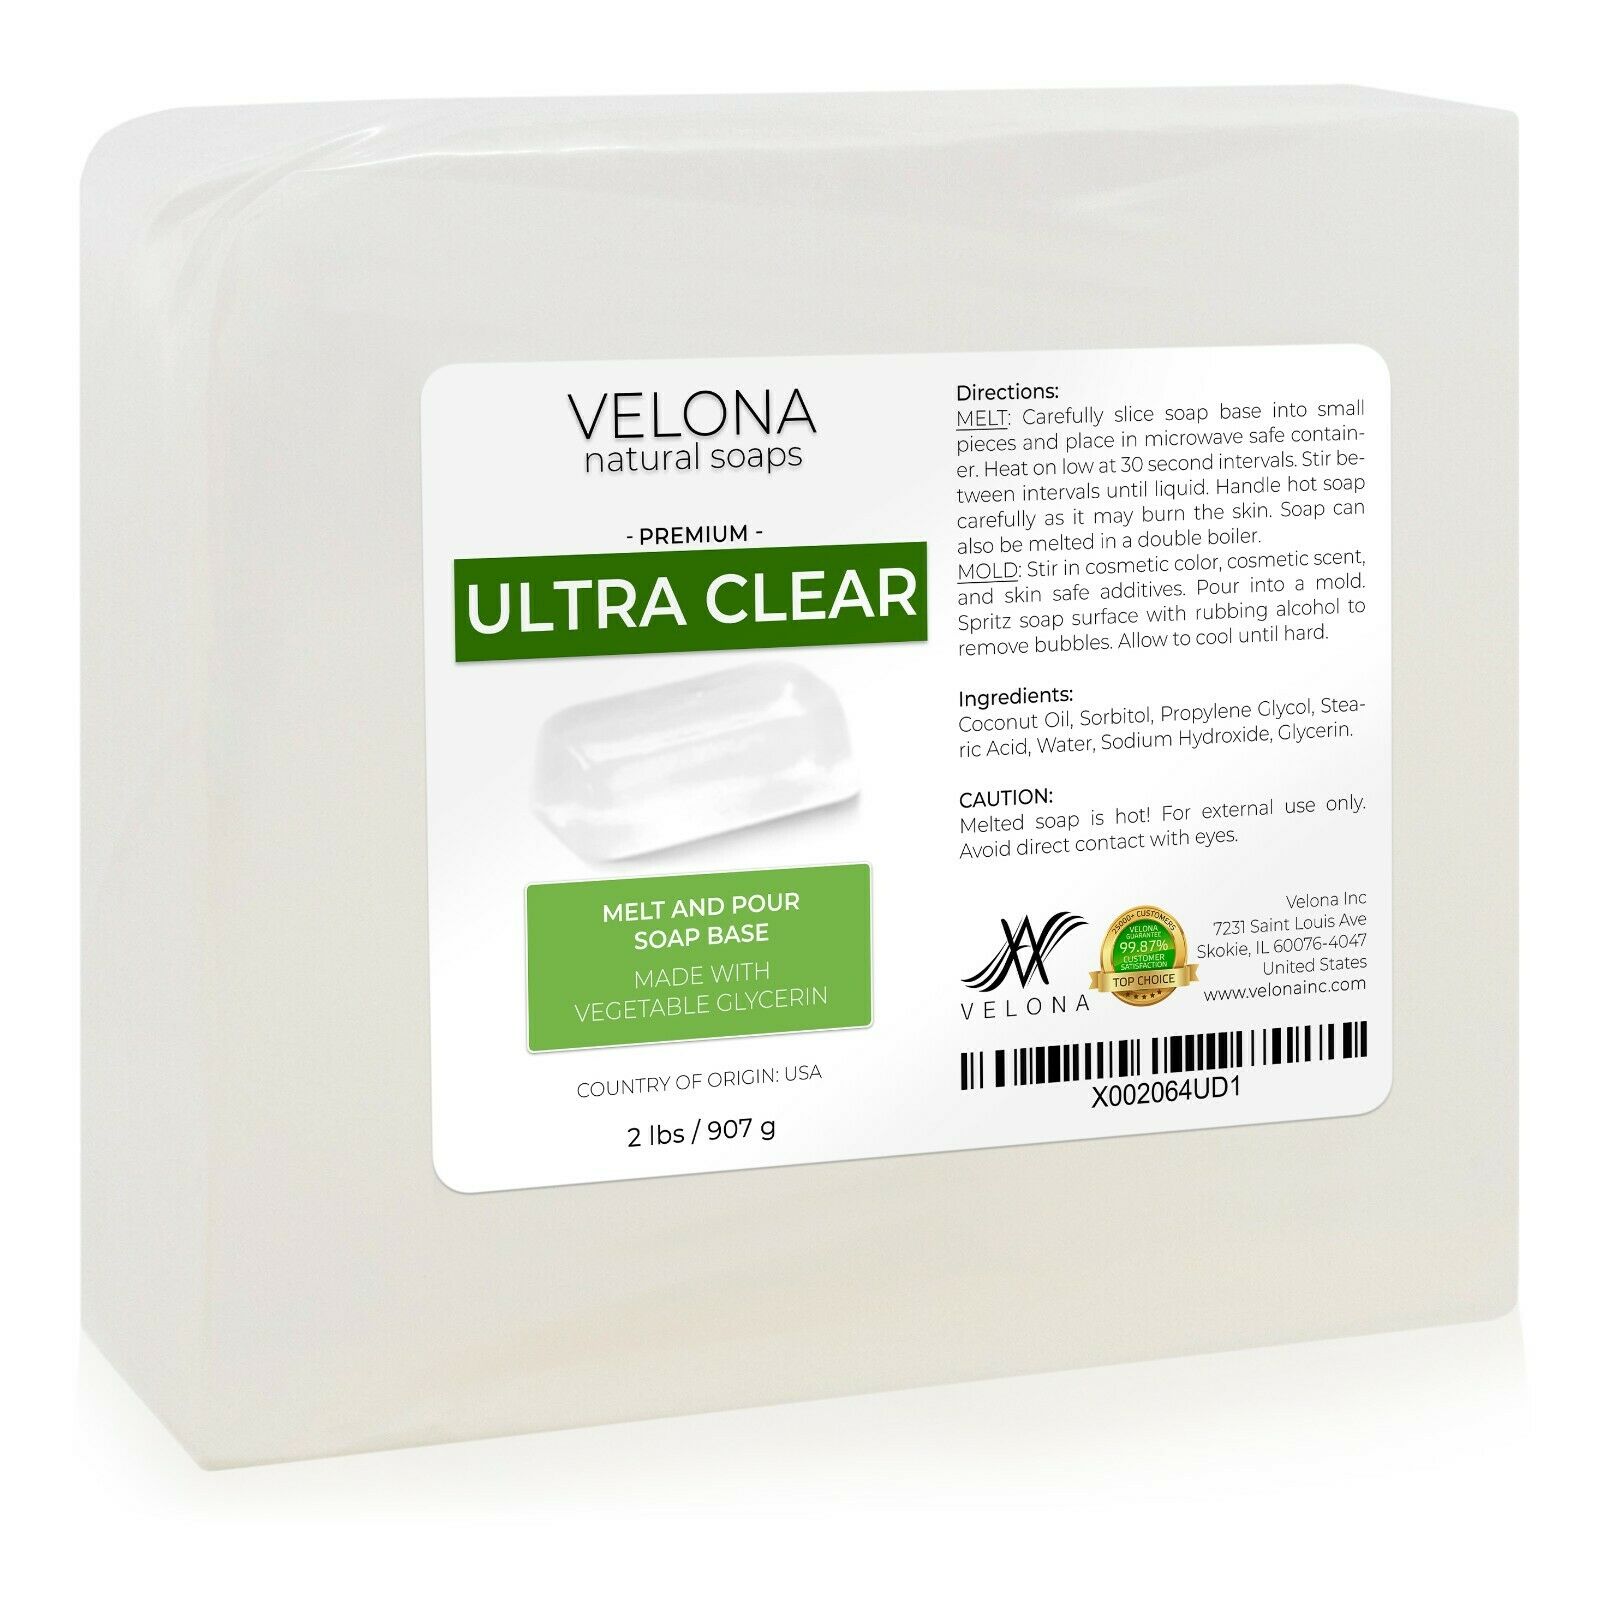 2,5,10,25lb - Ultra Clear Glycerin Soap Base By Velona Sls/sles Free Melt Pour